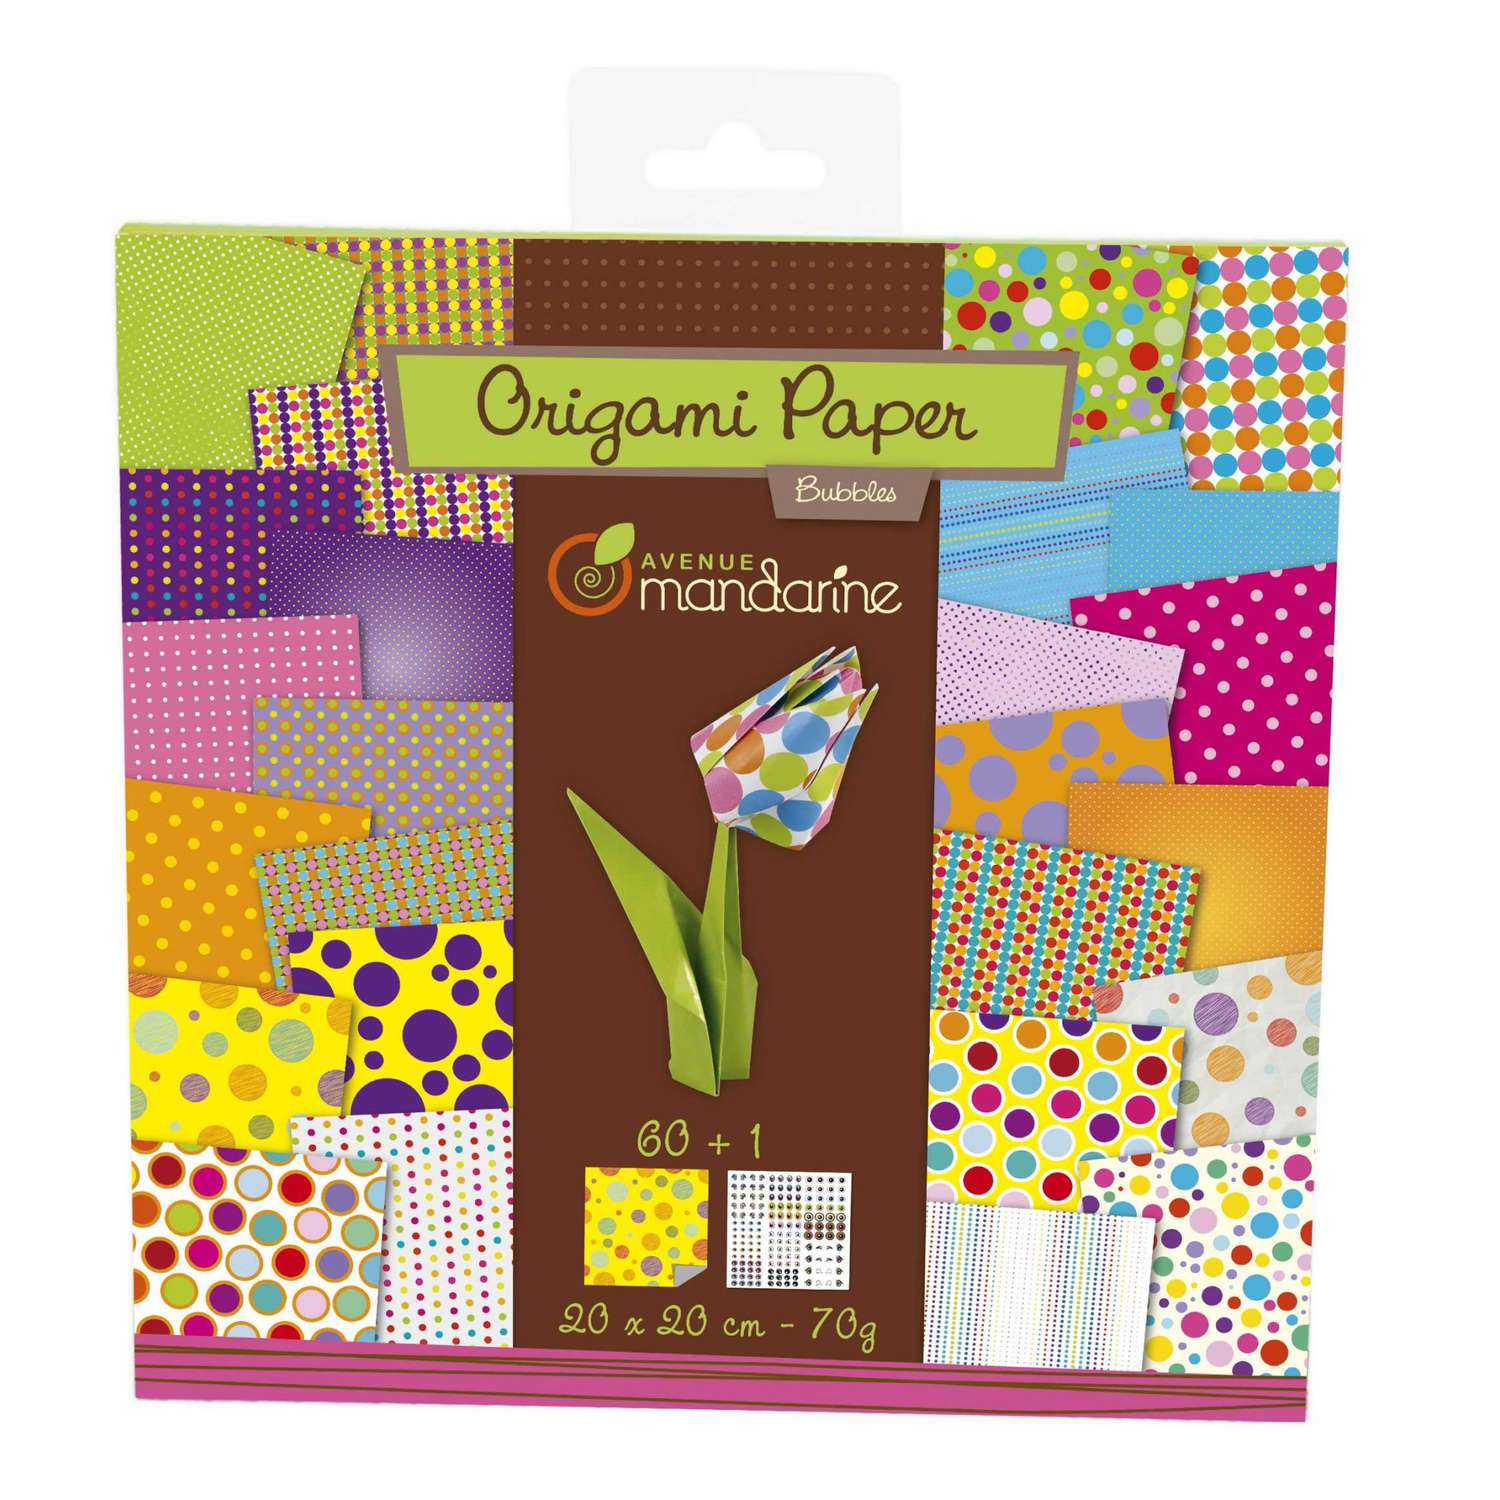 Avenue Mandarine 52506O - Un paquet de 60 feuilles Origami 20x20 cm 70G (30  motifs x 2 feuilles) et une planche de stickers incluse, Bubbles :  : Hogar y cocina